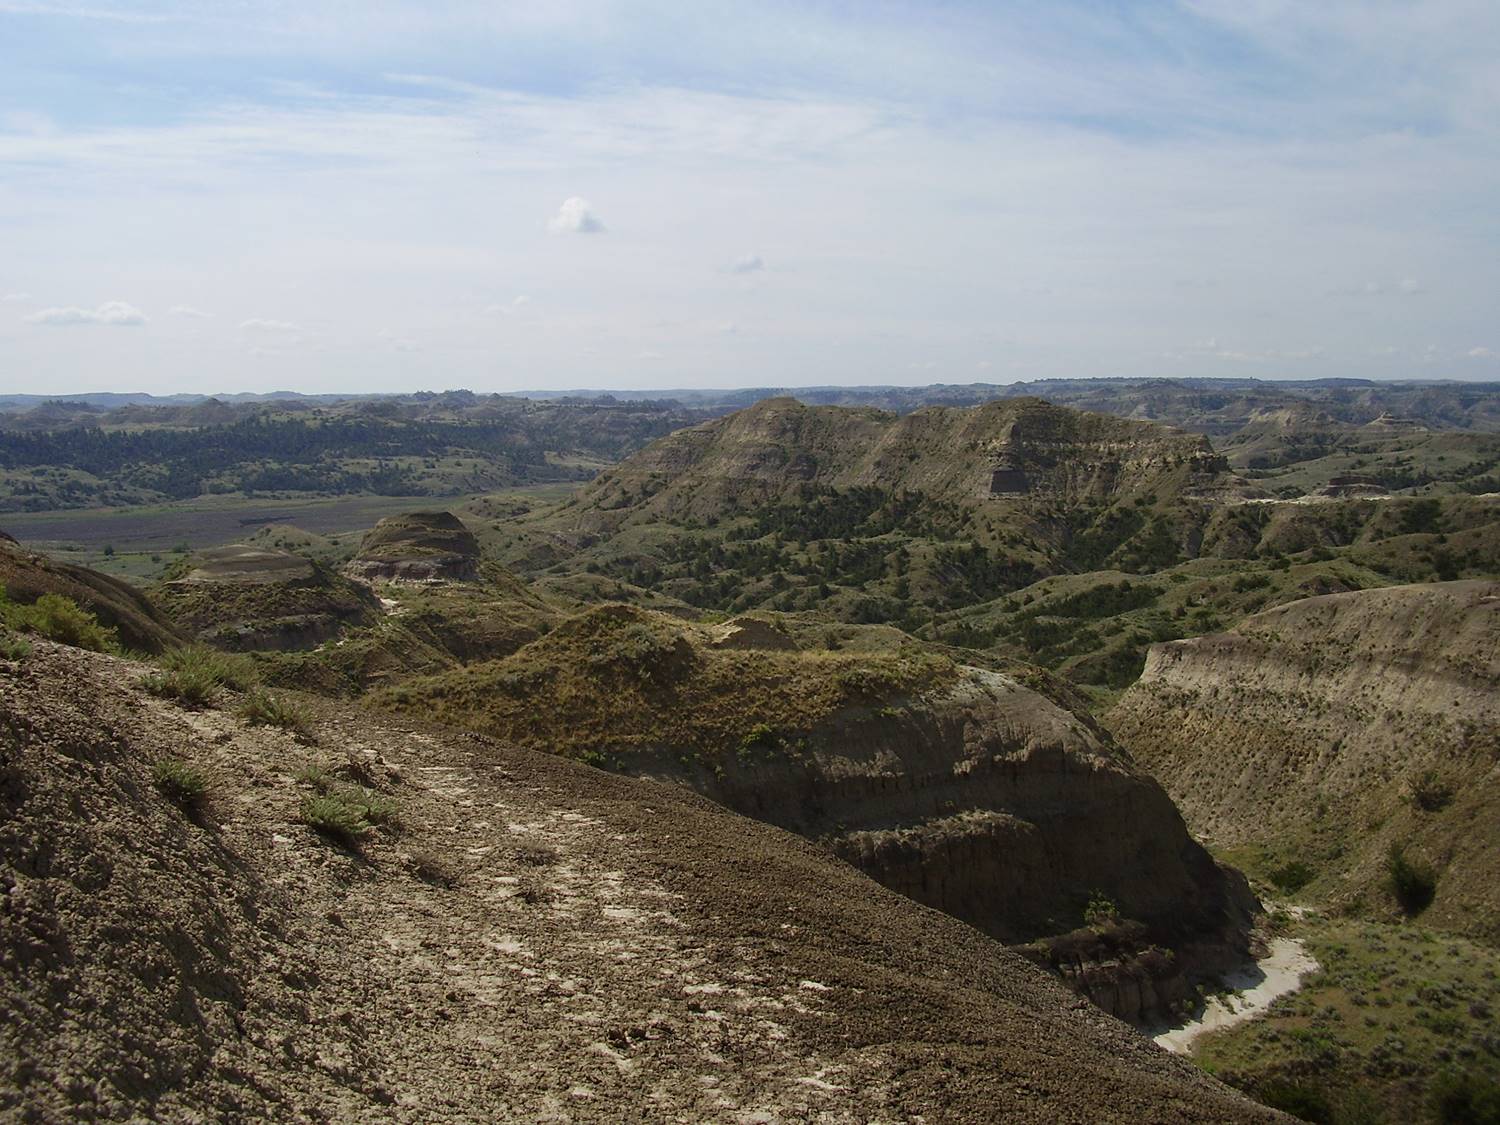 Pohled na výchozy geologického souvrství Hell Creek ve východní Montaně. V této geologické formaci jsdou dochovány fosilní a sedimentární pozůstatky posledních asi 1 až 1,5 milionu let křídové periody, a tedy i posledních žijících neptačích dinosaurů